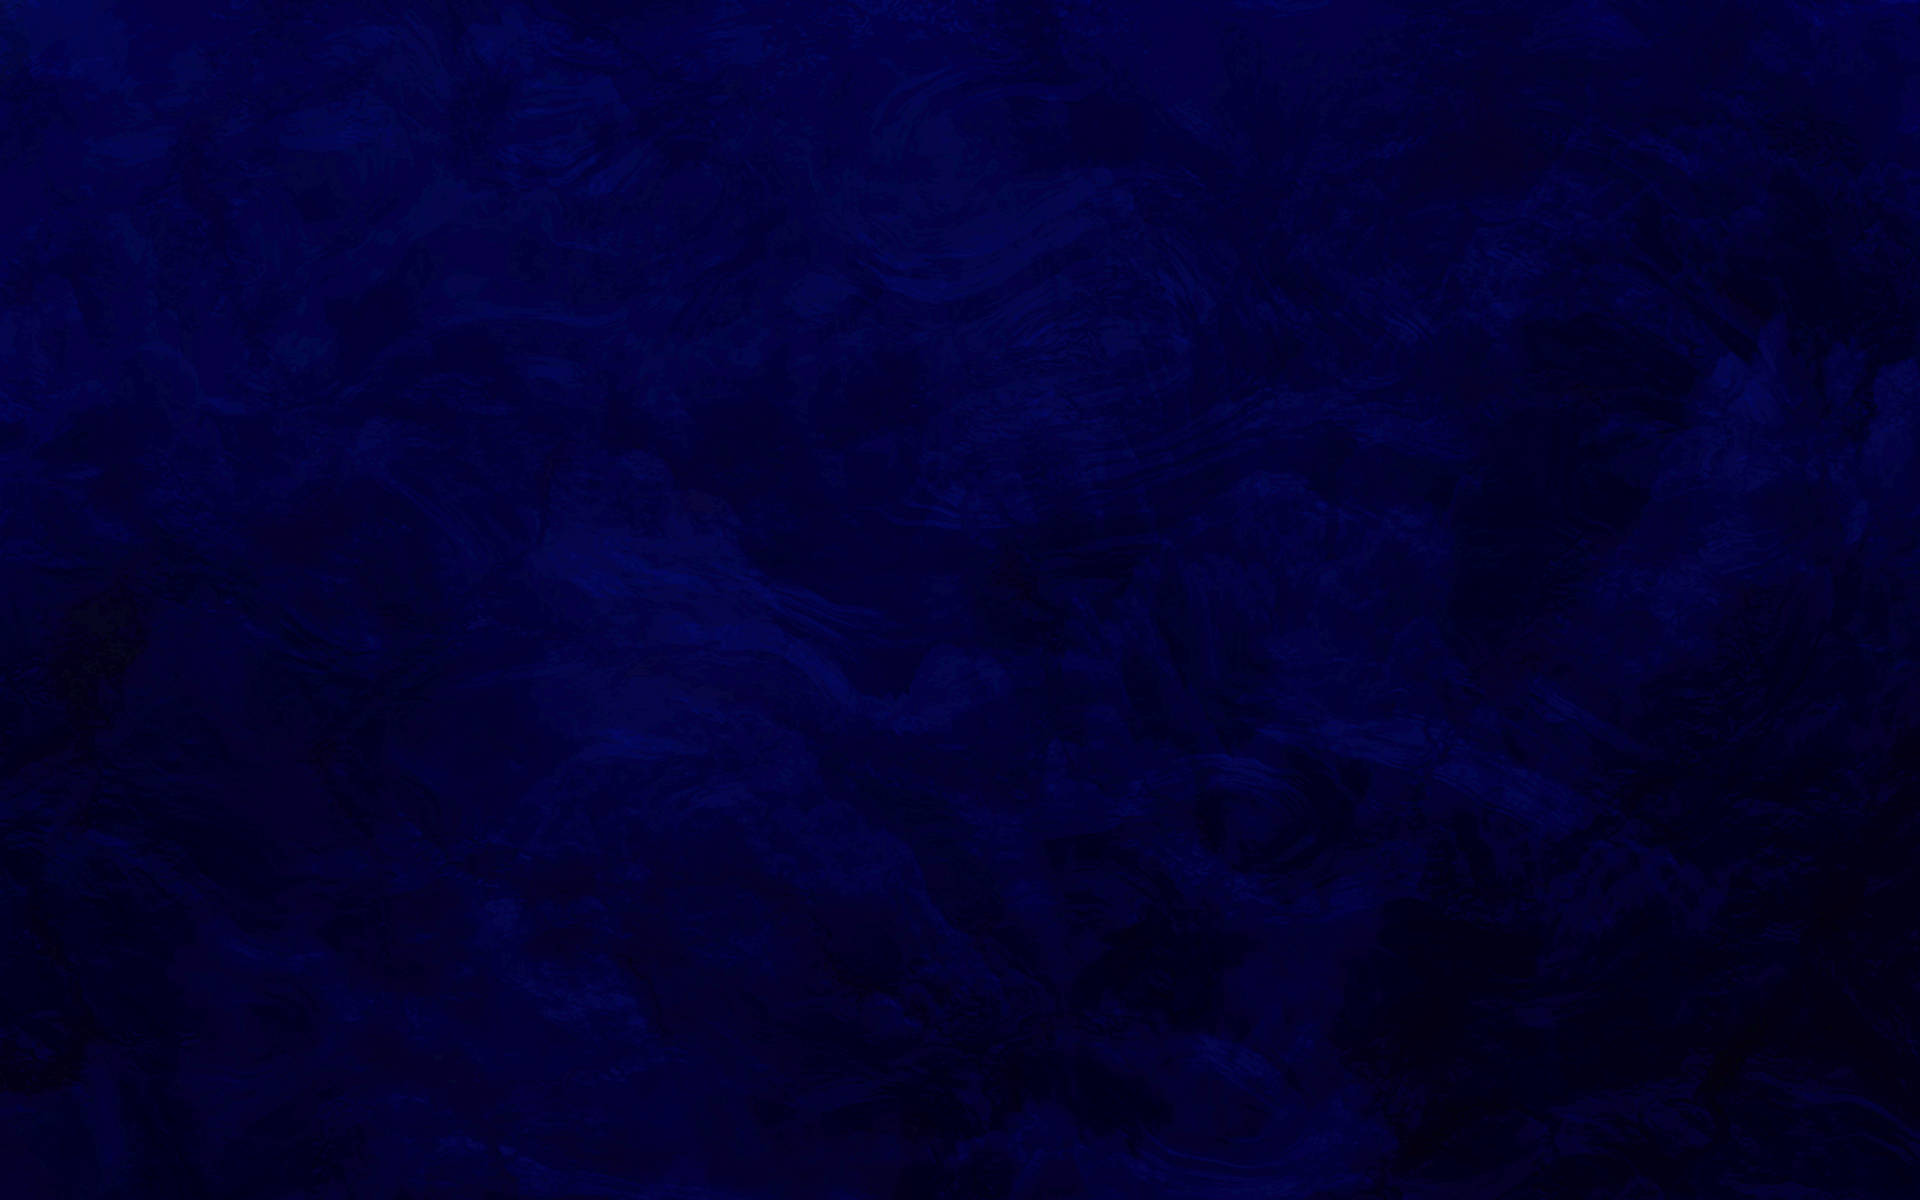 Dark Blue Paint Strokes Background